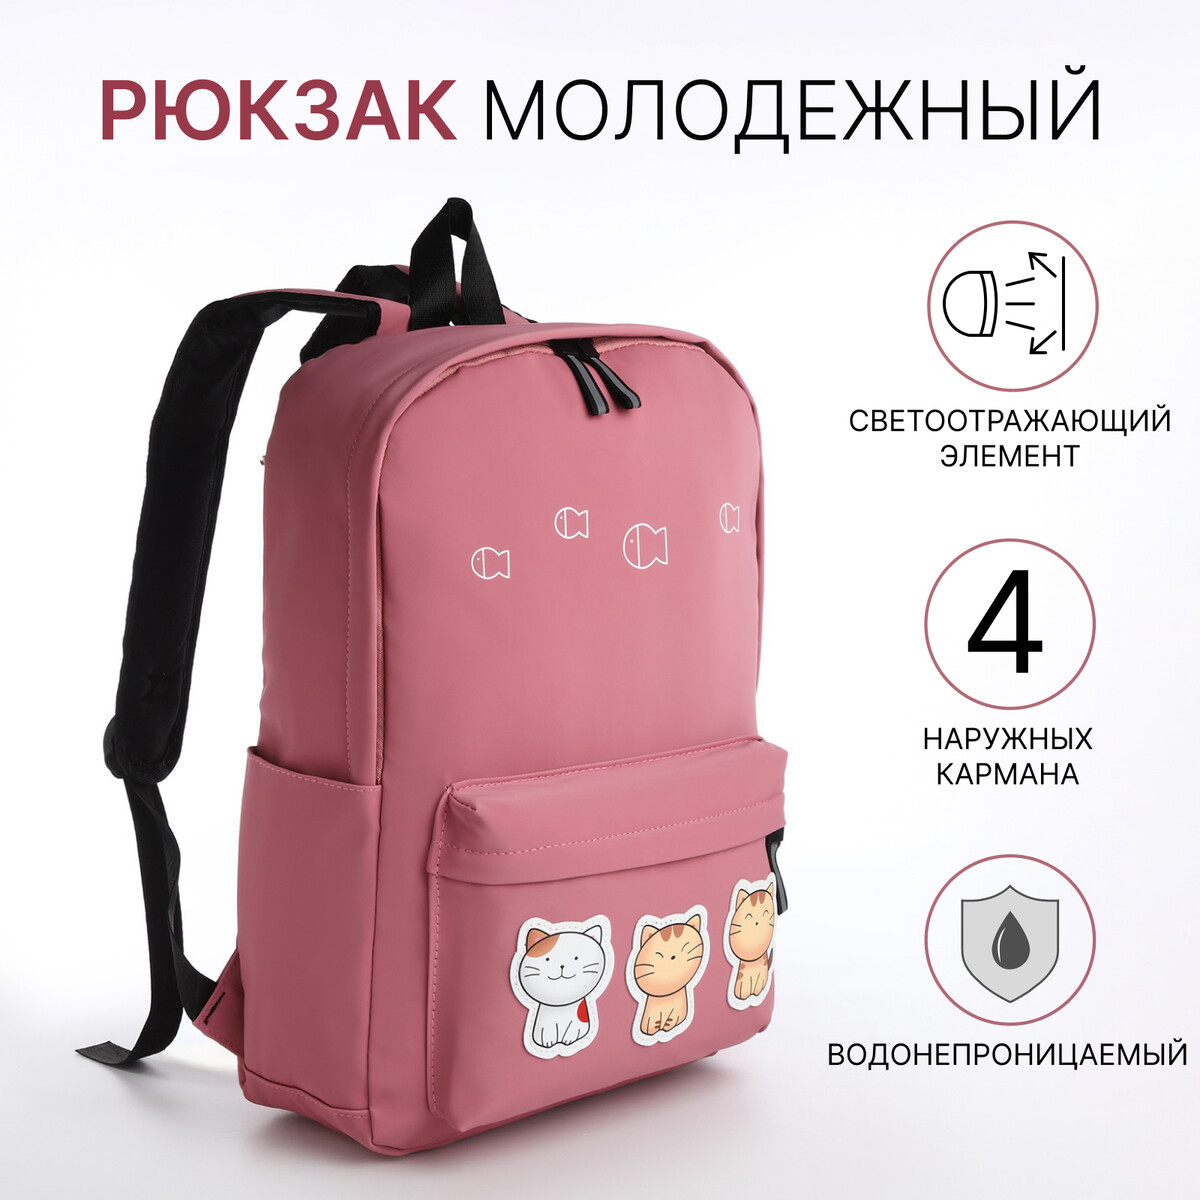 Рюкзак молодежный из текстиля на молнии, 4 кармана, цвет розовый рюкзак молодежный young create 27х10х23 см